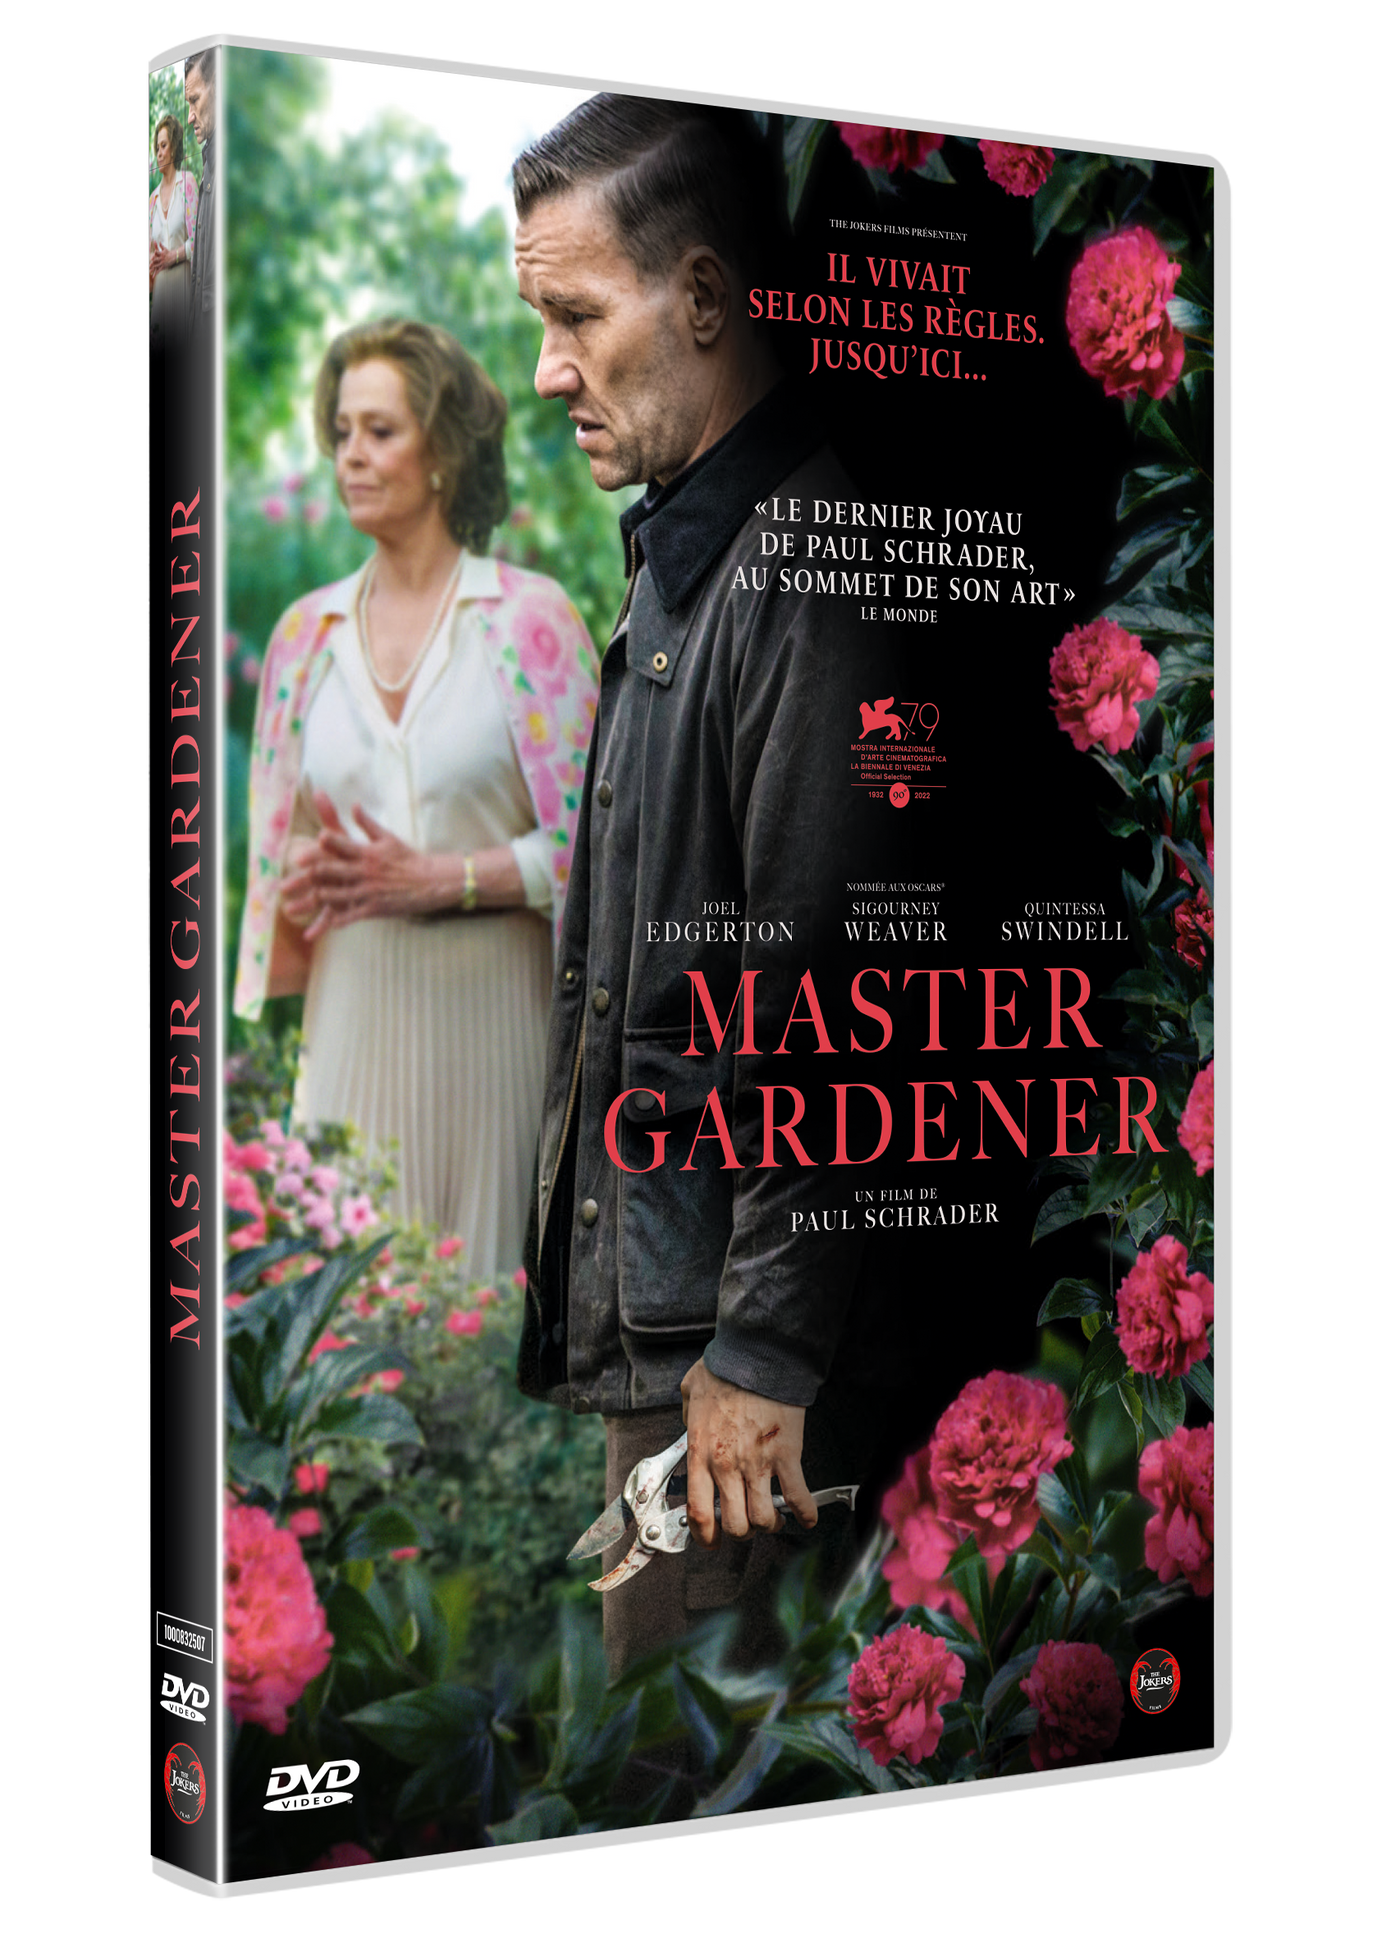 DVD "Master Gardener"